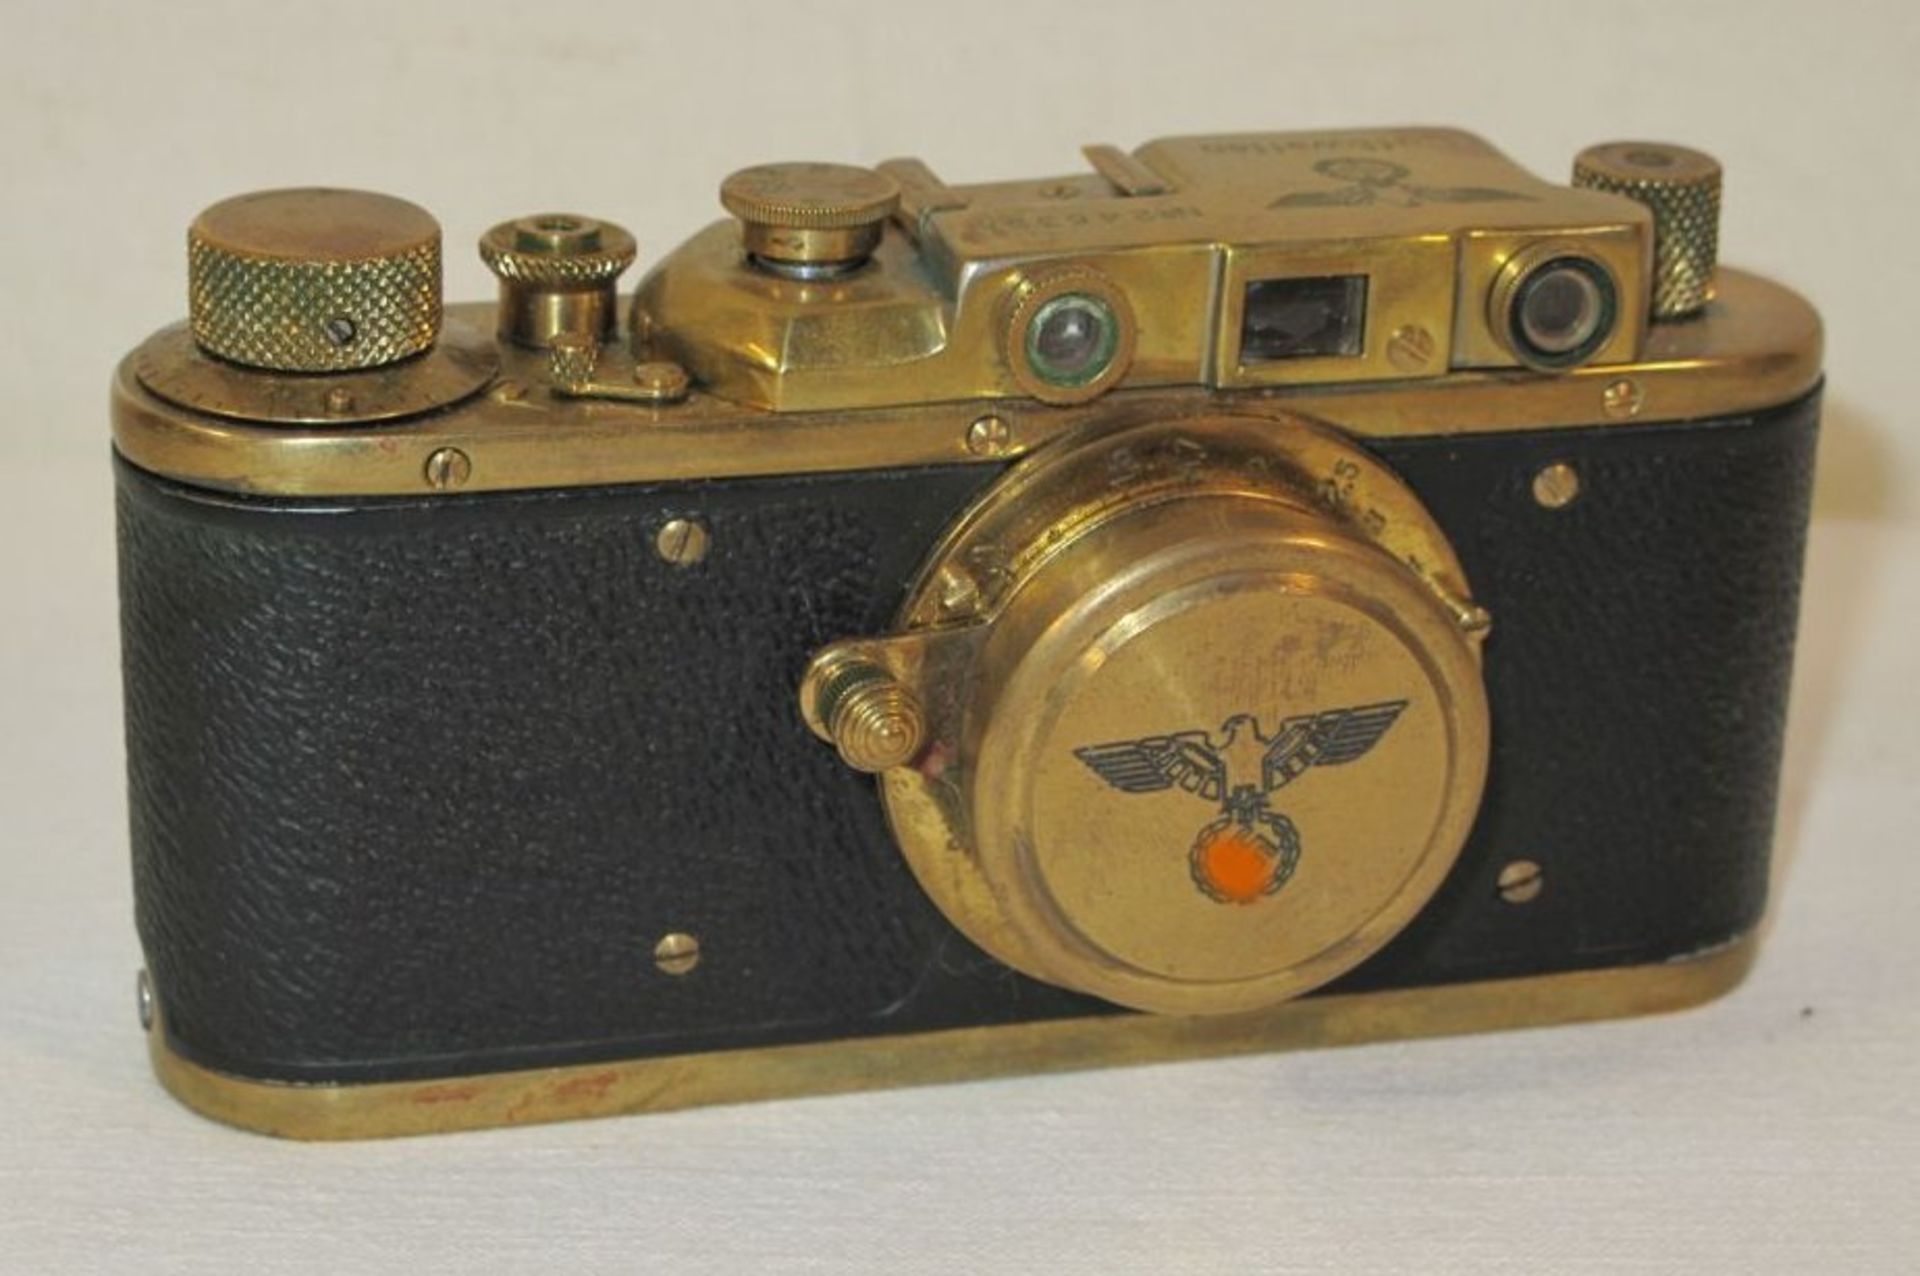 Leica-Nachbau "Luftwaffe", Sammleranfertigung, No. 245398, Funktion nicht geprüft.